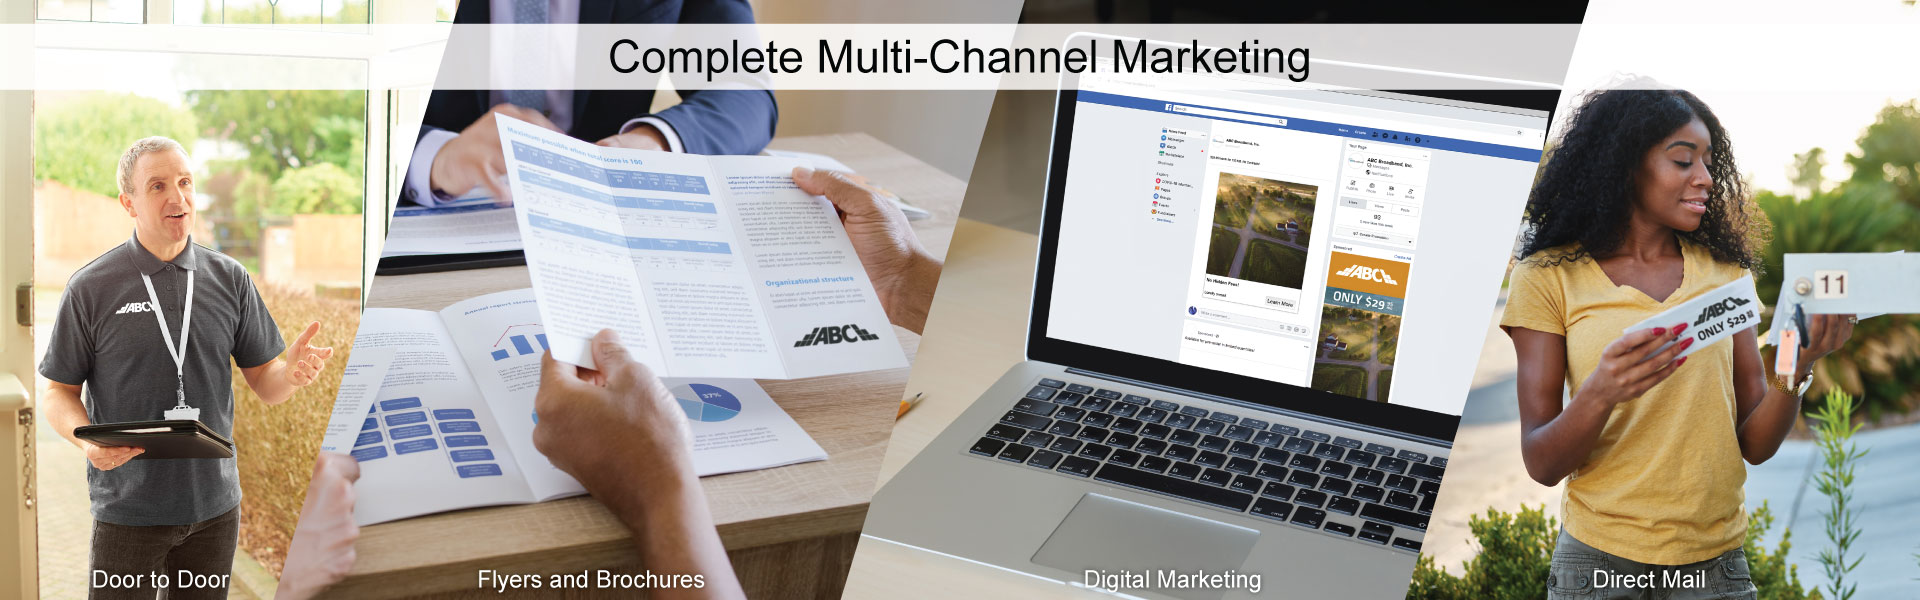 Multi_Channel